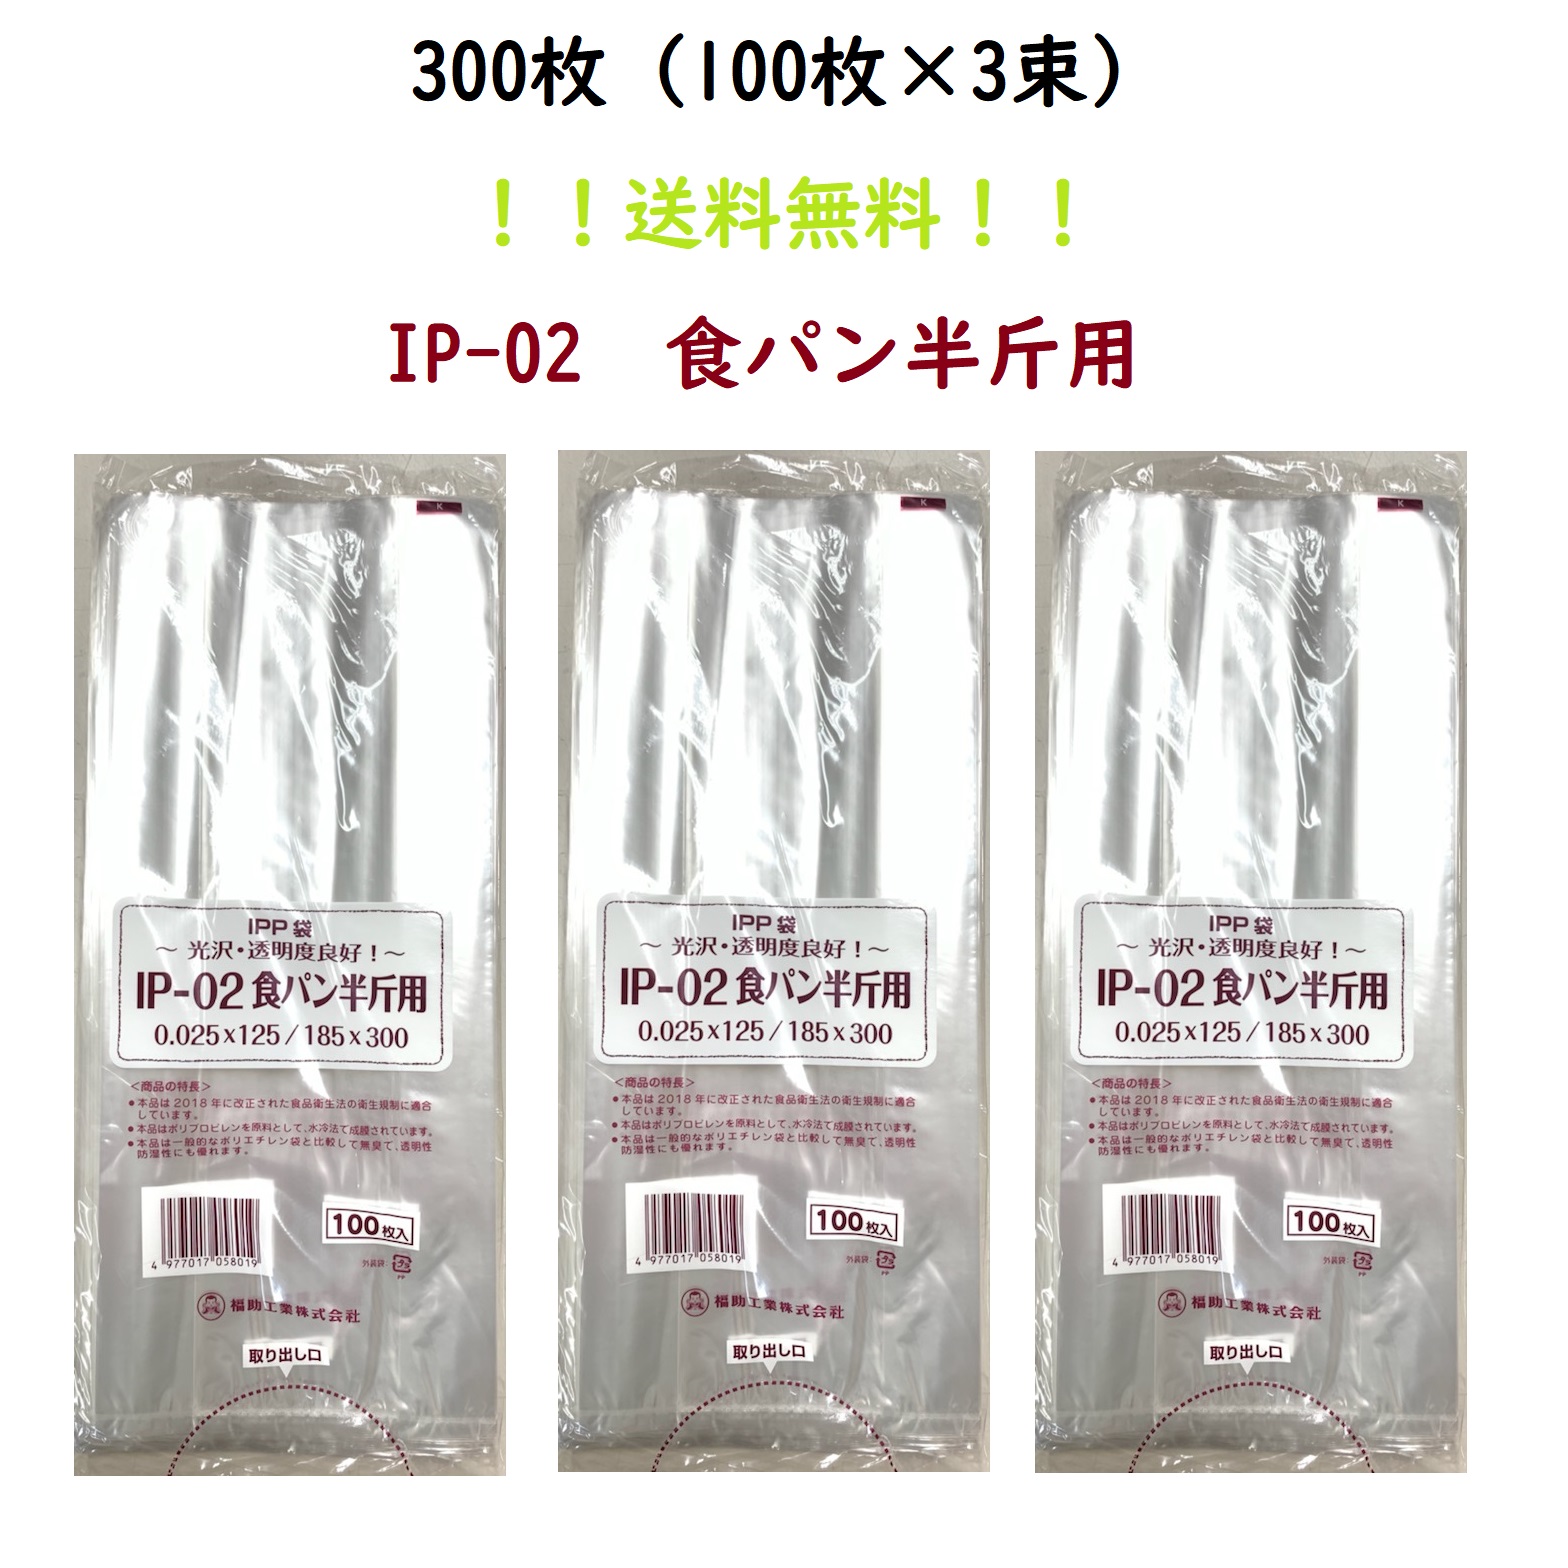 PP食パン袋 1斤用 LEタイプ 200枚 エコノミータイプ HEIKO パン袋 オムツ 消耗品のスーパーパック